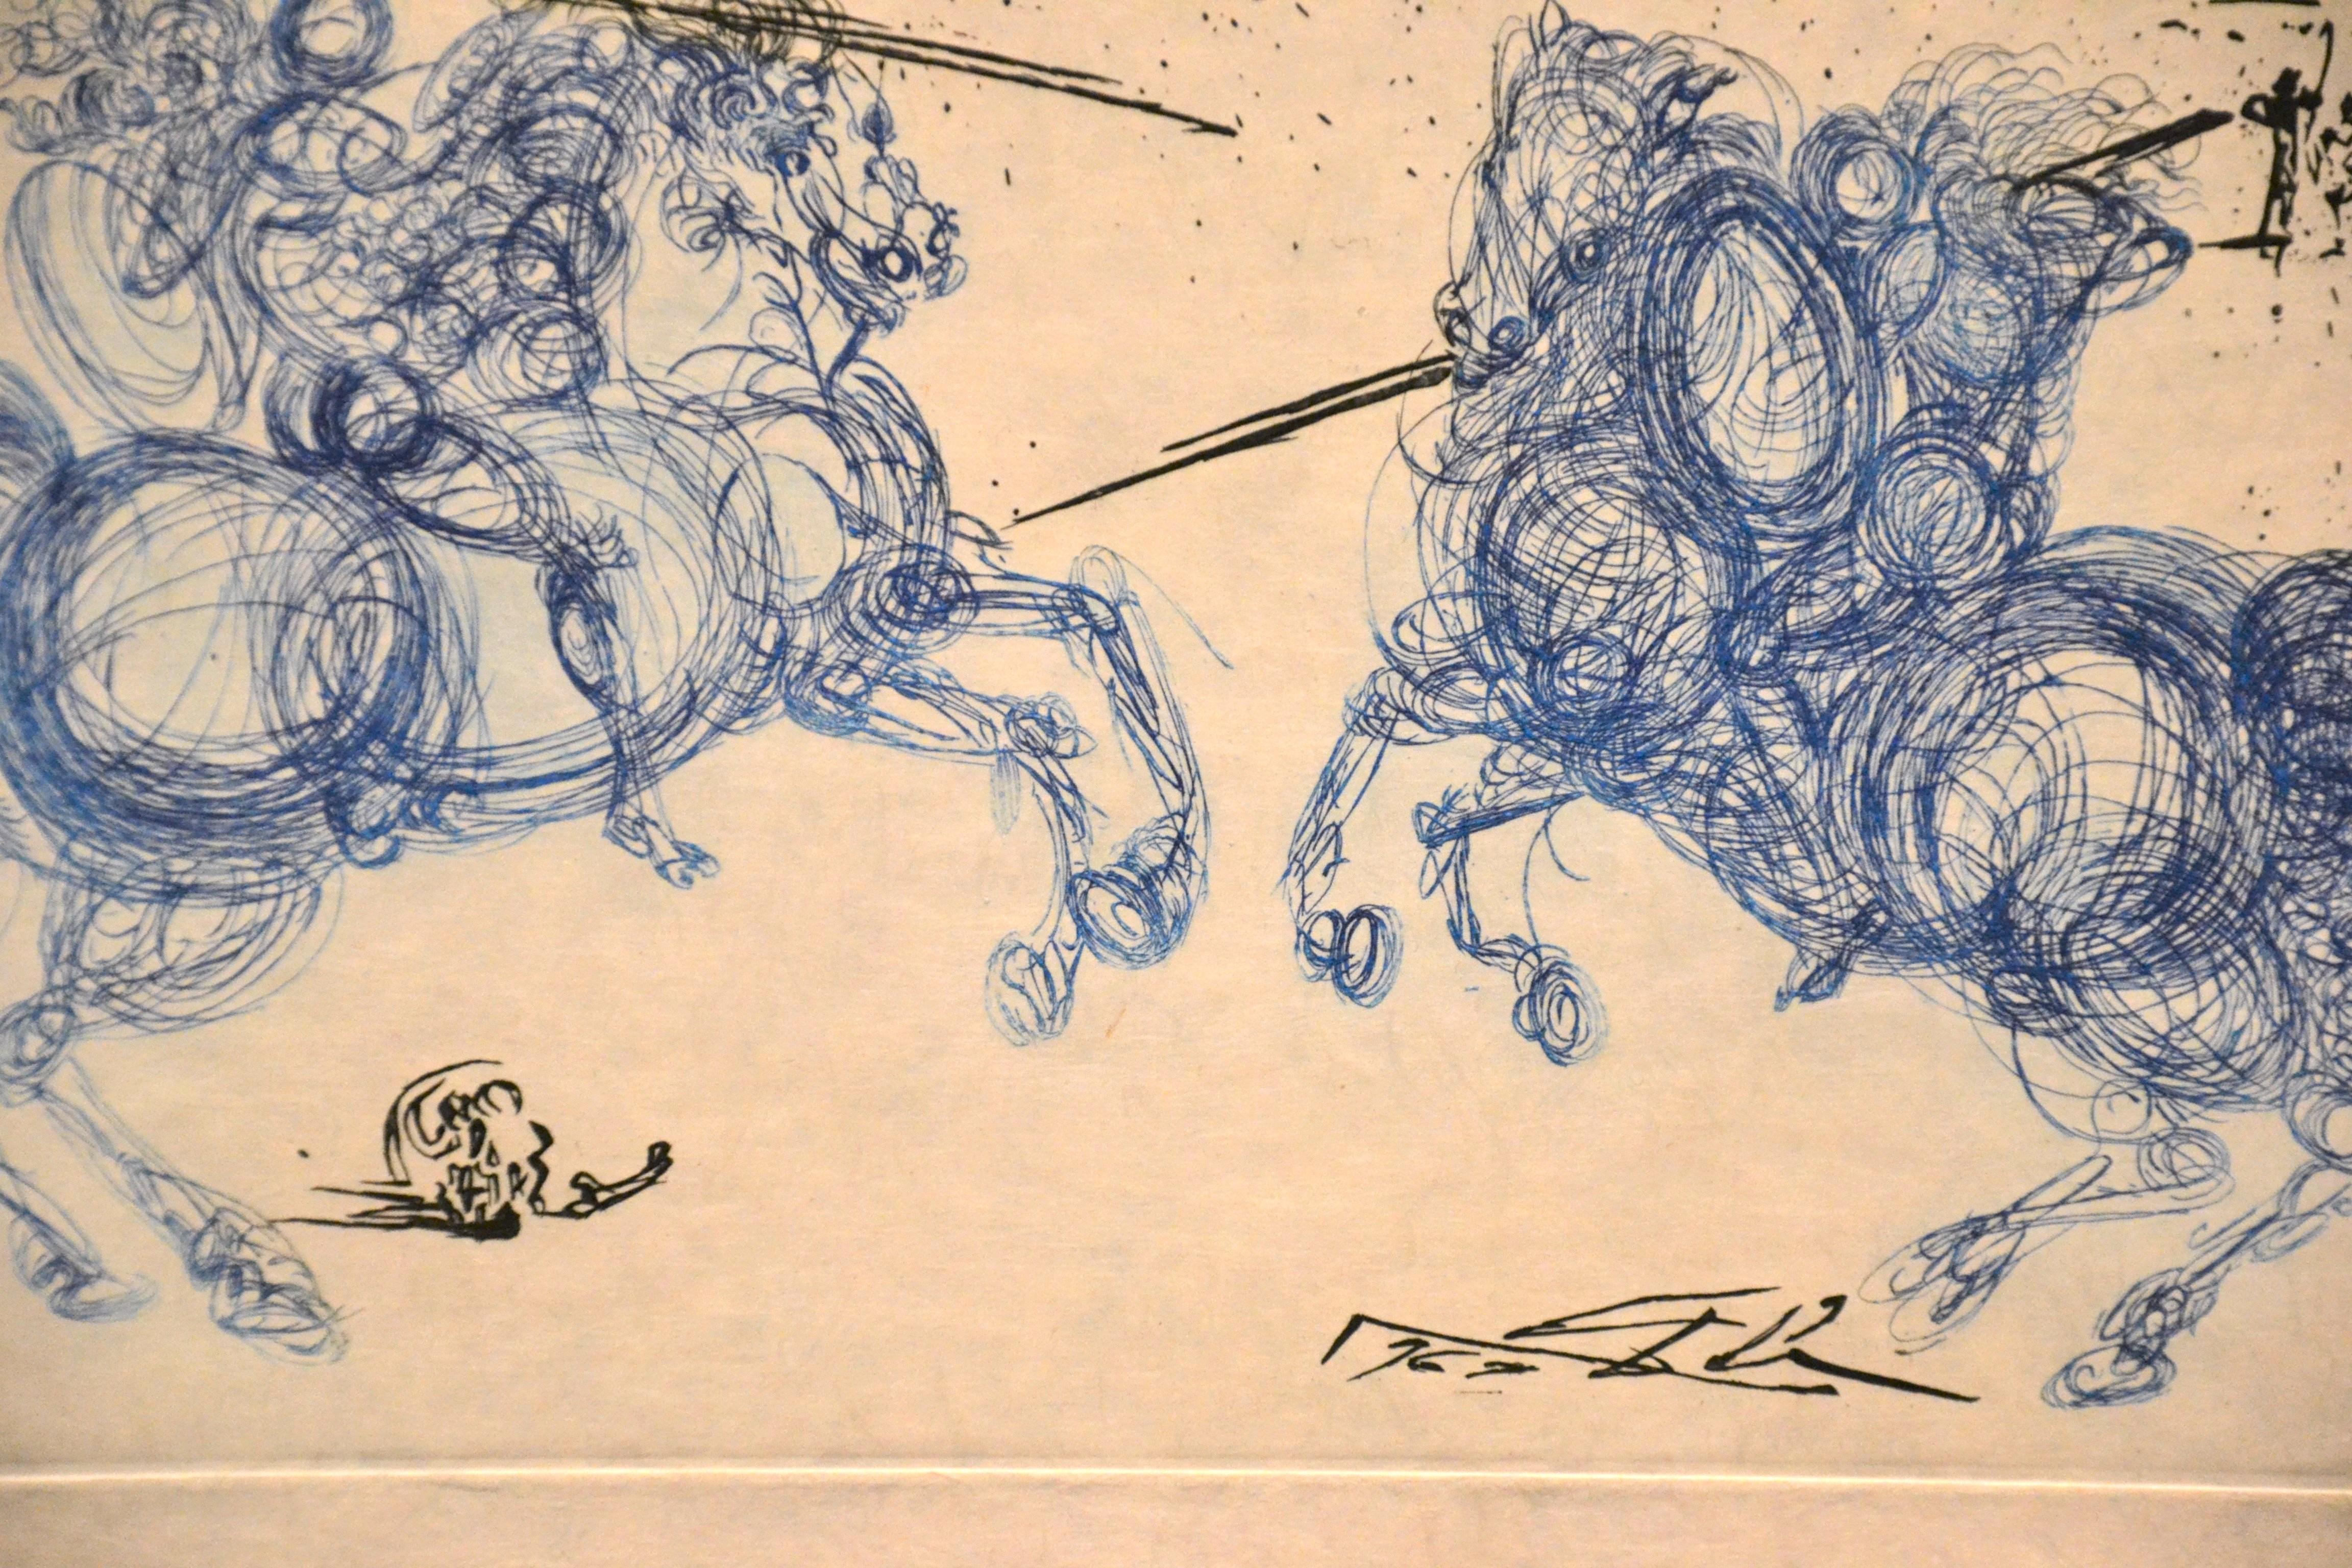 Les Cavaliers Bleus - Original Etching by S. Dali - 1969 - Print by Salvador Dalí